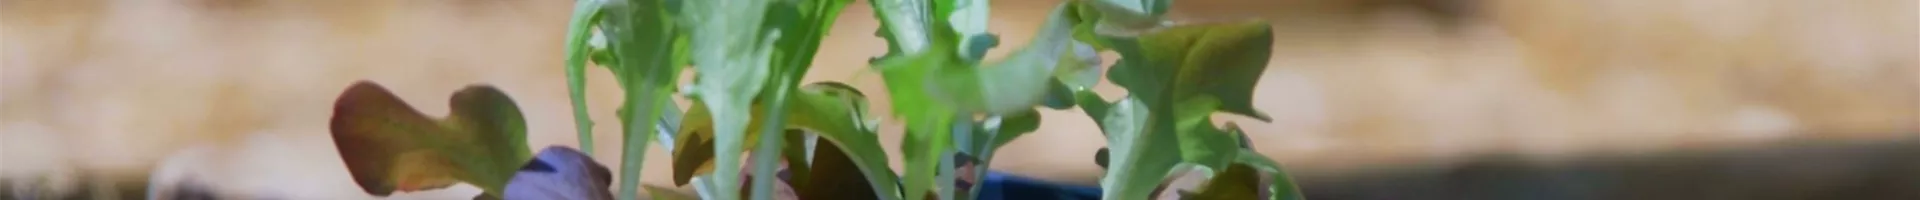 Salat - Einpflanzen ins Gemüsebeet (Thumbnail).jpg